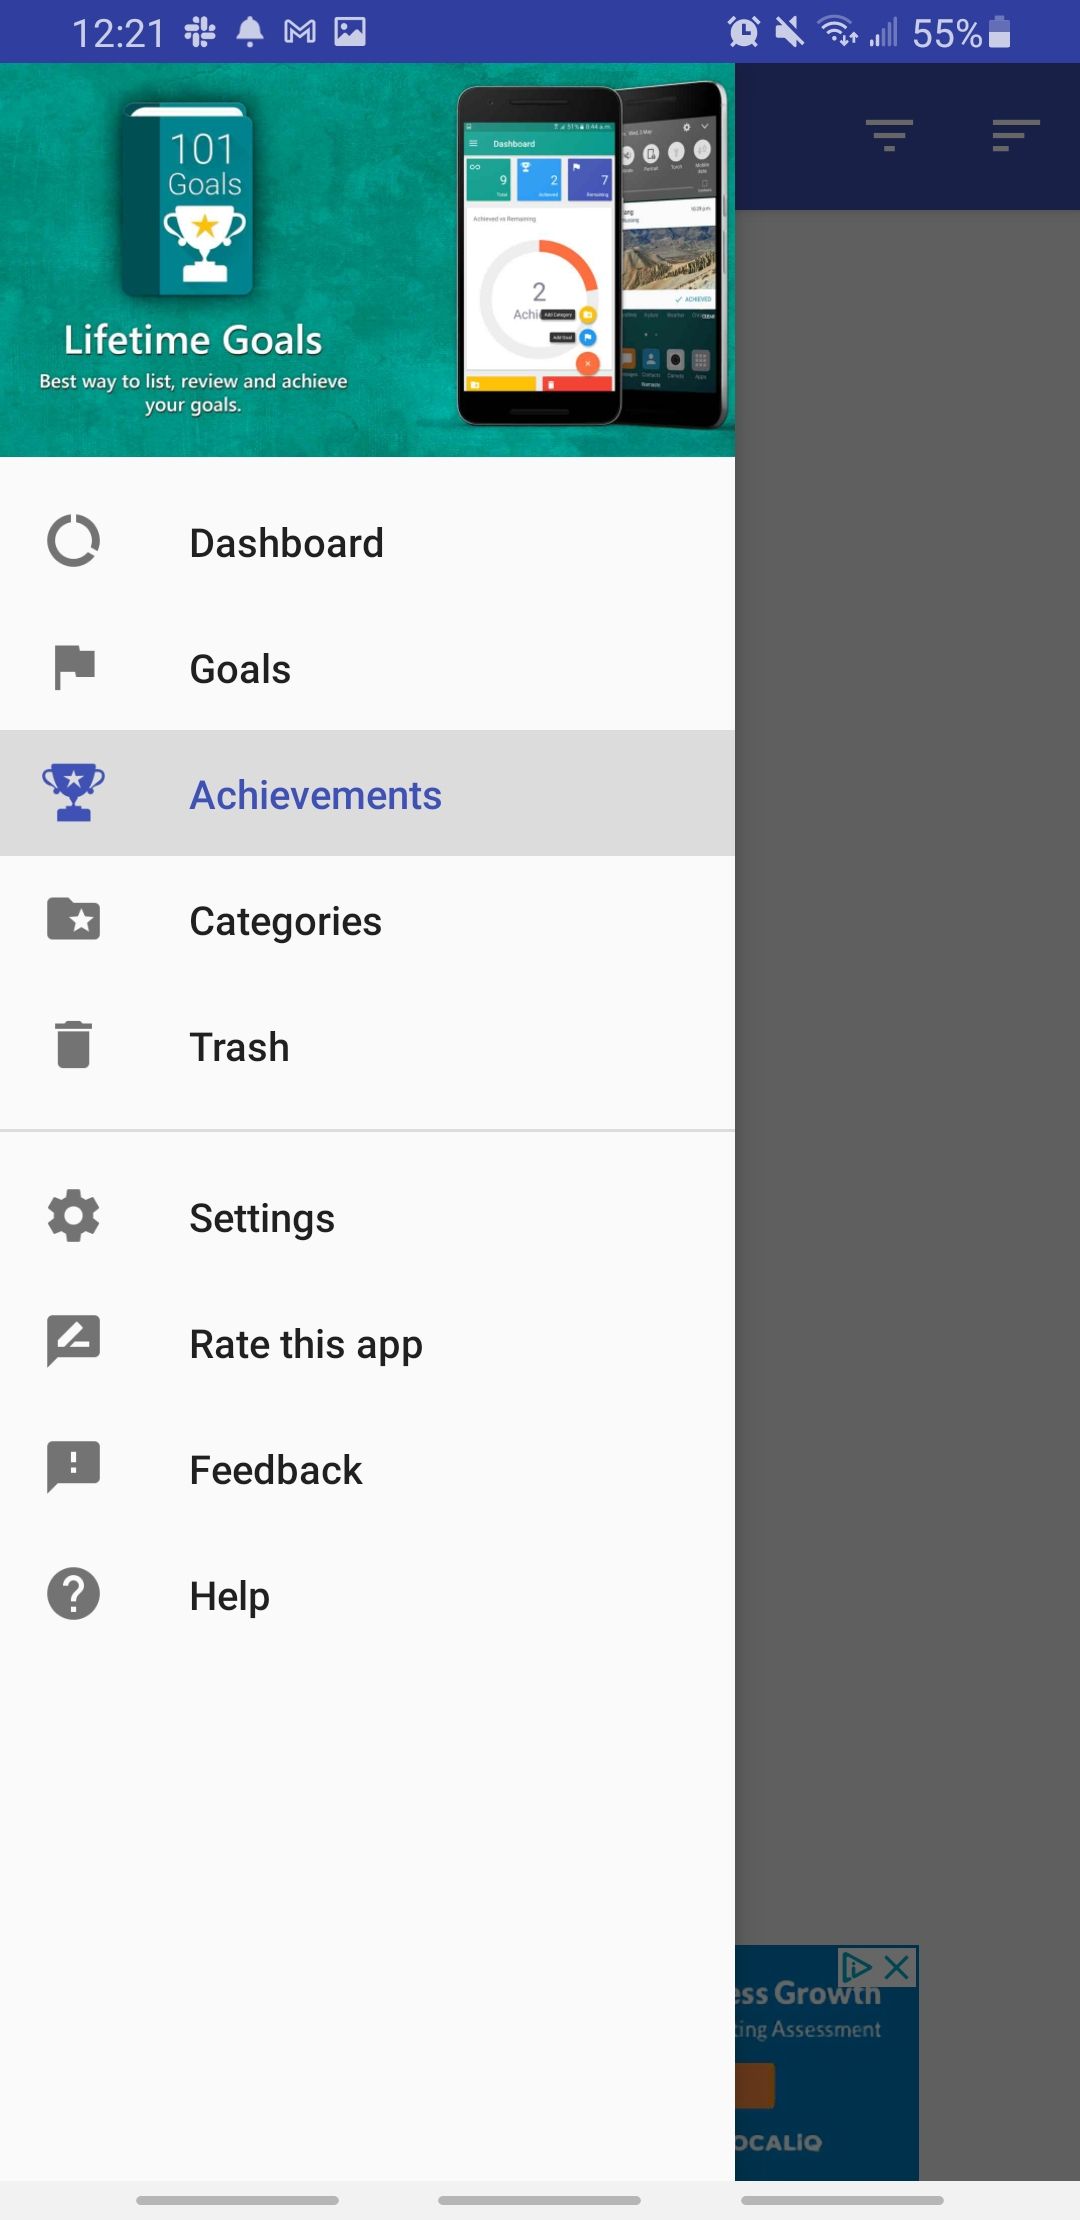 lifetime goals app features